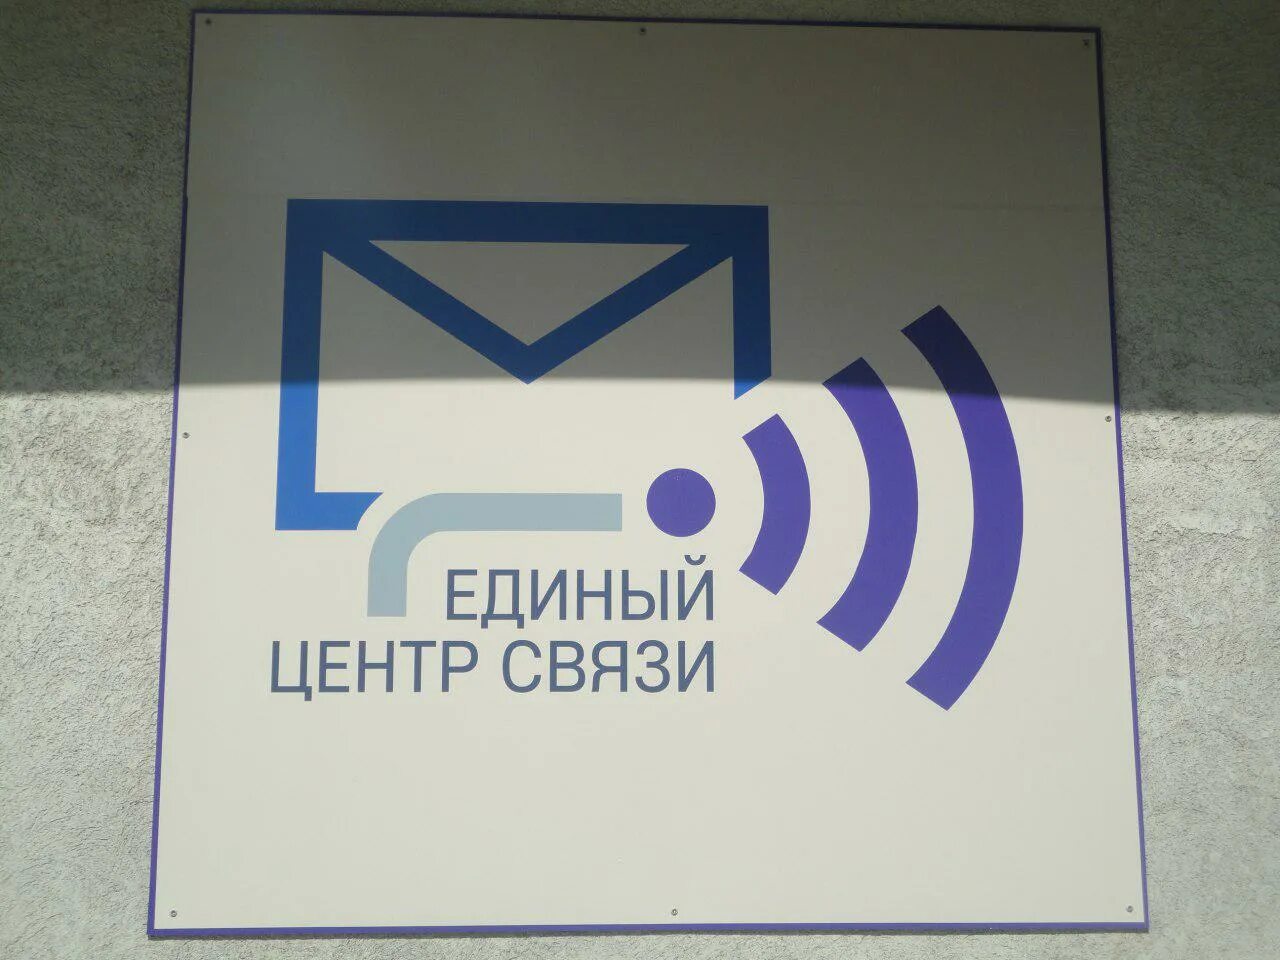 Центр связи где. Единый центр связи почта Донбасса. Центр связи. Единый центр.